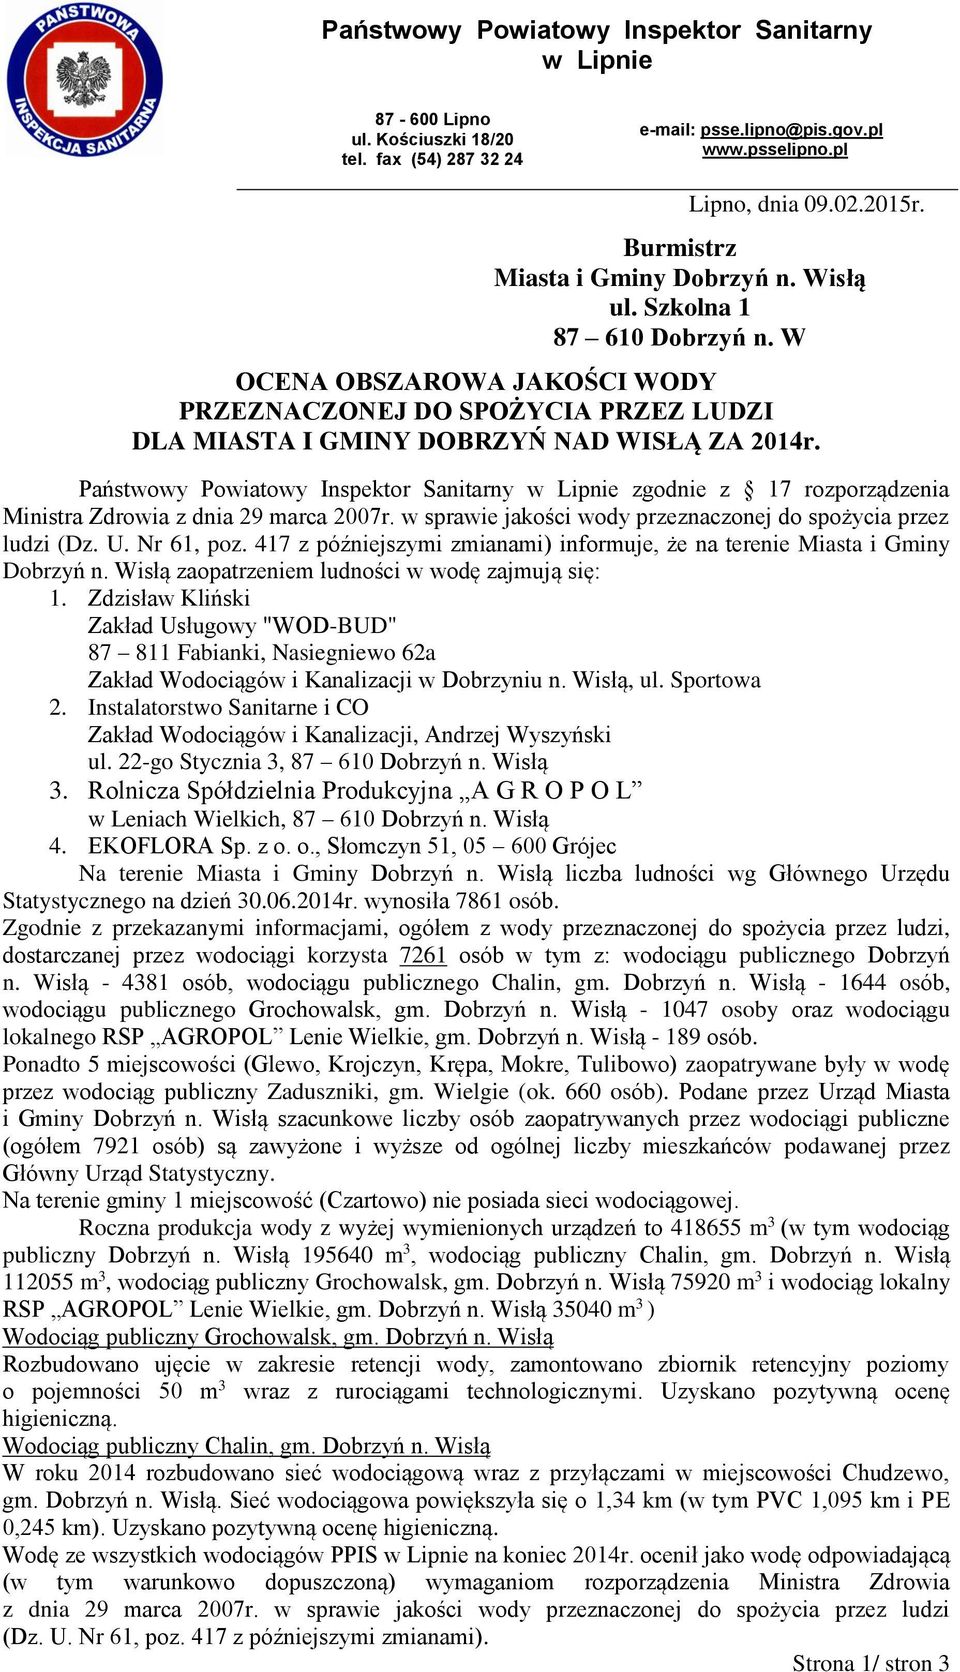 Państwowy Powiatowy Inspektor Sanitarny w Lipnie zgodnie z 17 rozporządzenia Ministra Zdrowia z dnia 29 marca 2007r. w sprawie jakości wody przeznaczonej do spożycia przez ludzi (Dz. U. Nr 61, poz.